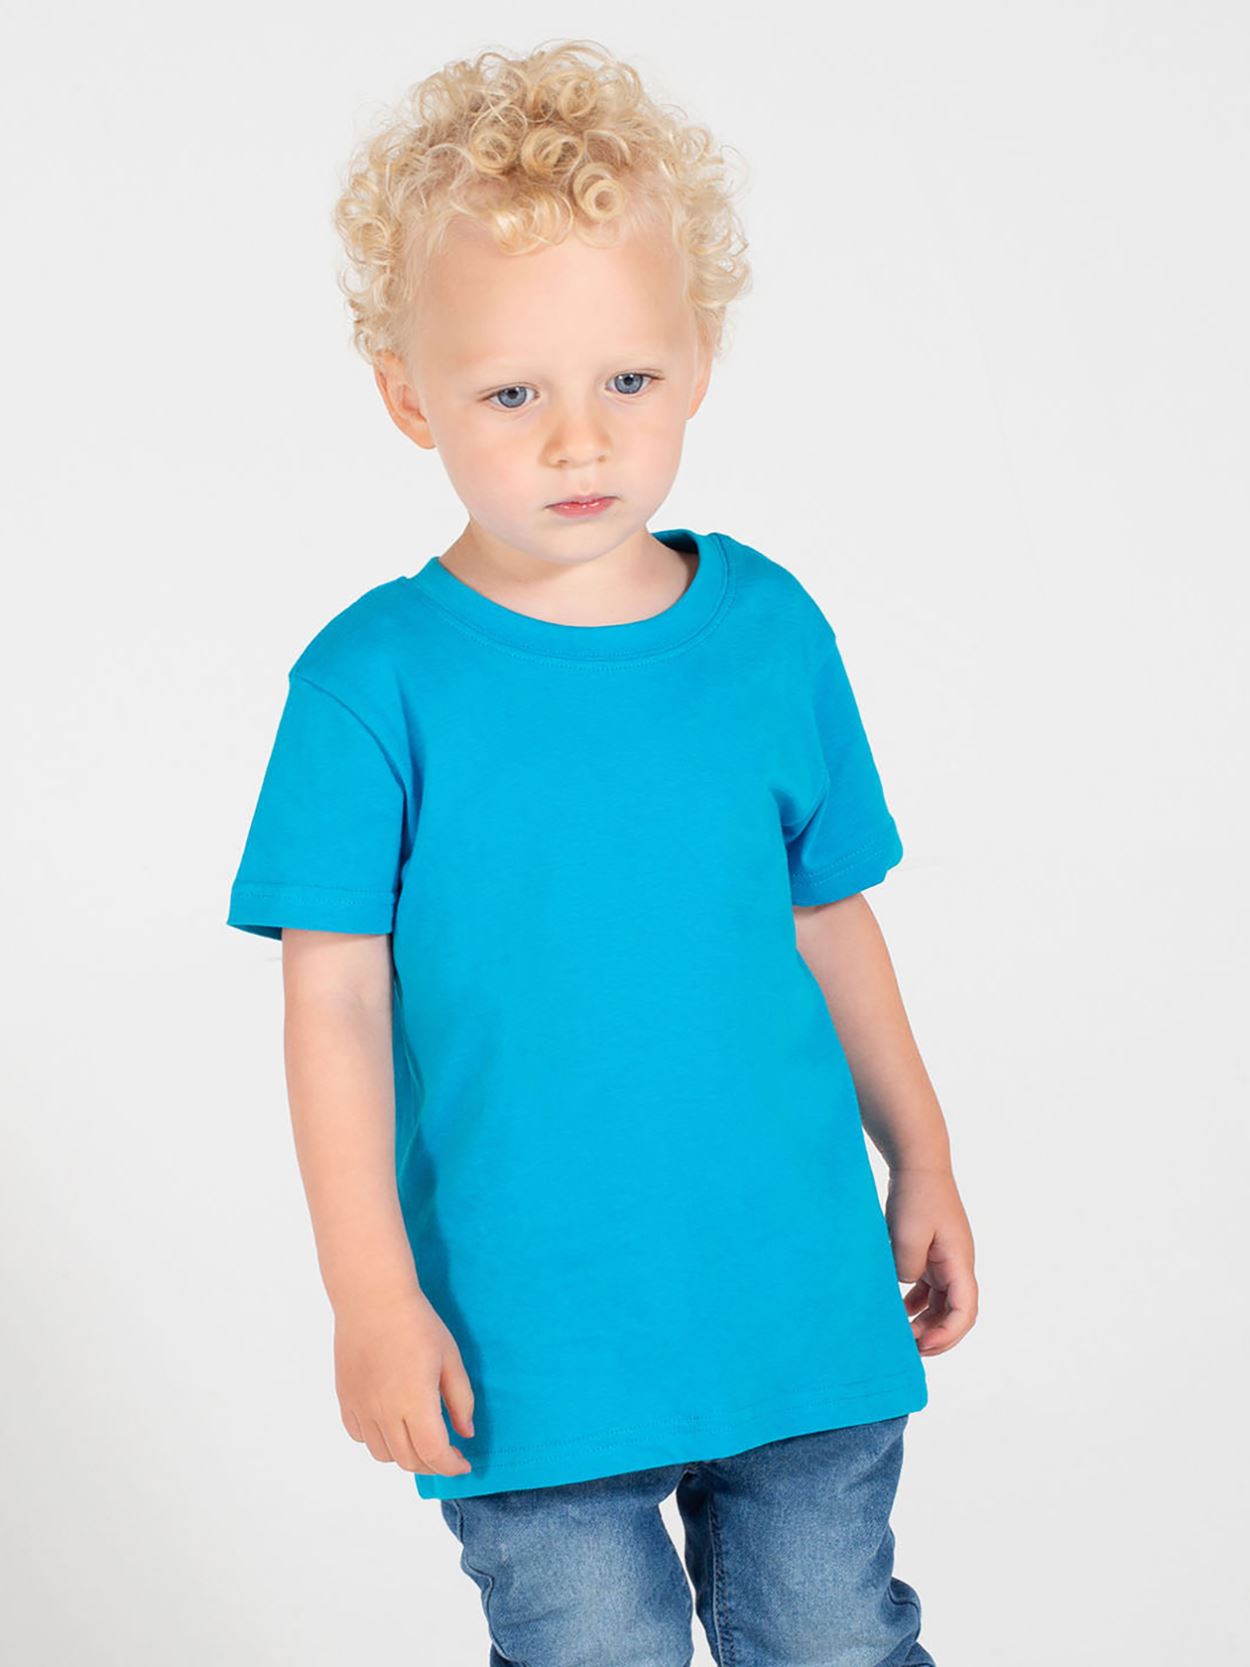 LW020 Baby/Toddler T-Shirt Image 5